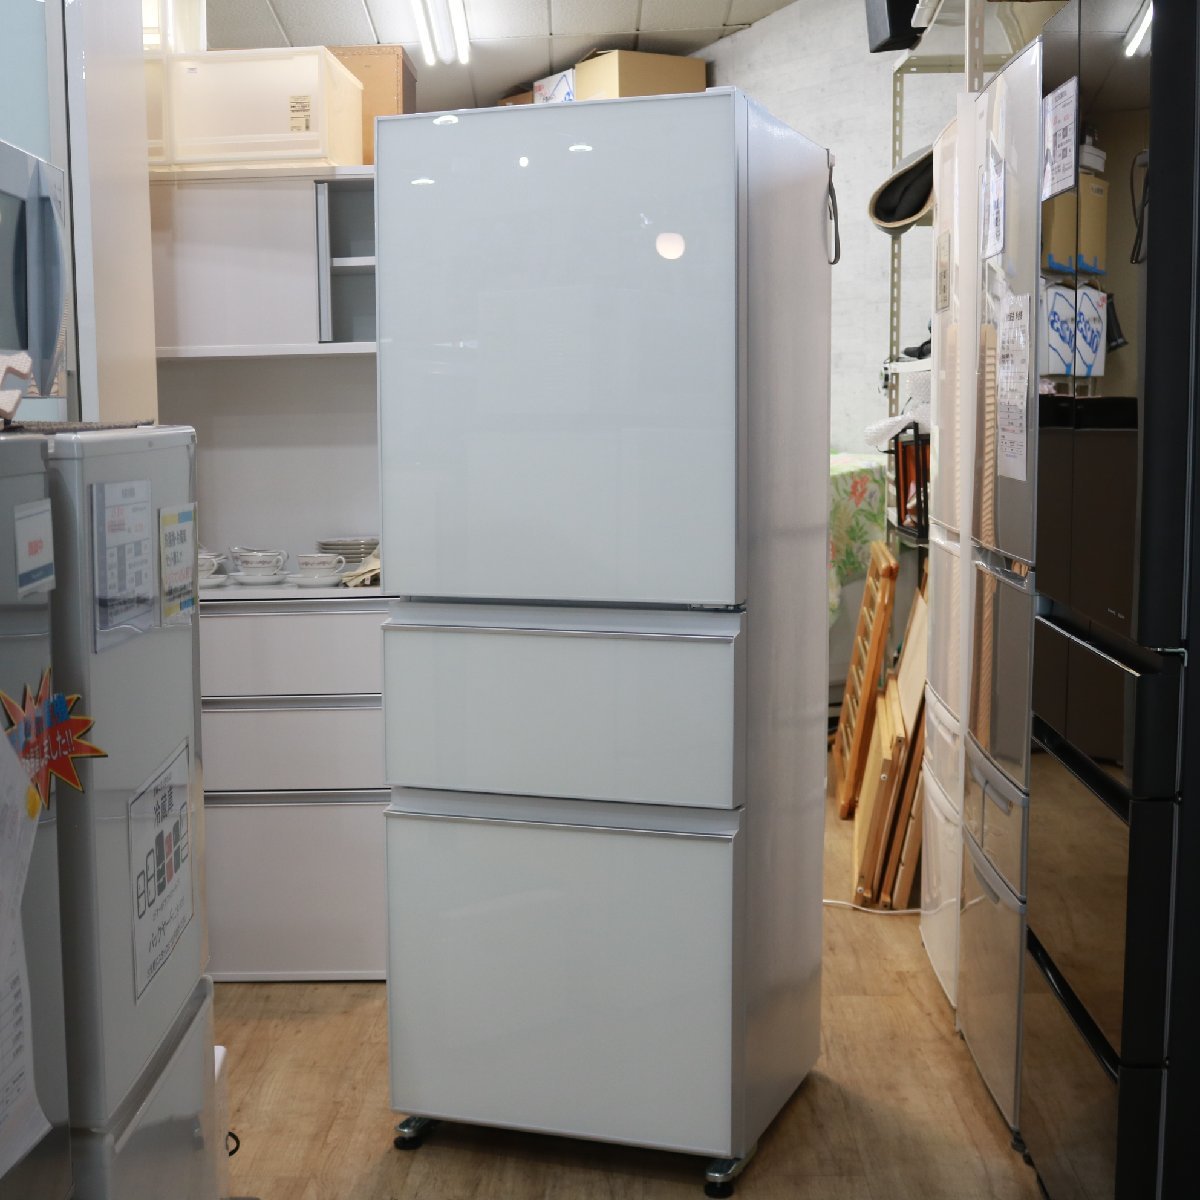 川崎市川崎区にて 三菱 3ドア冷蔵庫 MR-CG33F-W 2020年製 を出張買取させて頂きました。